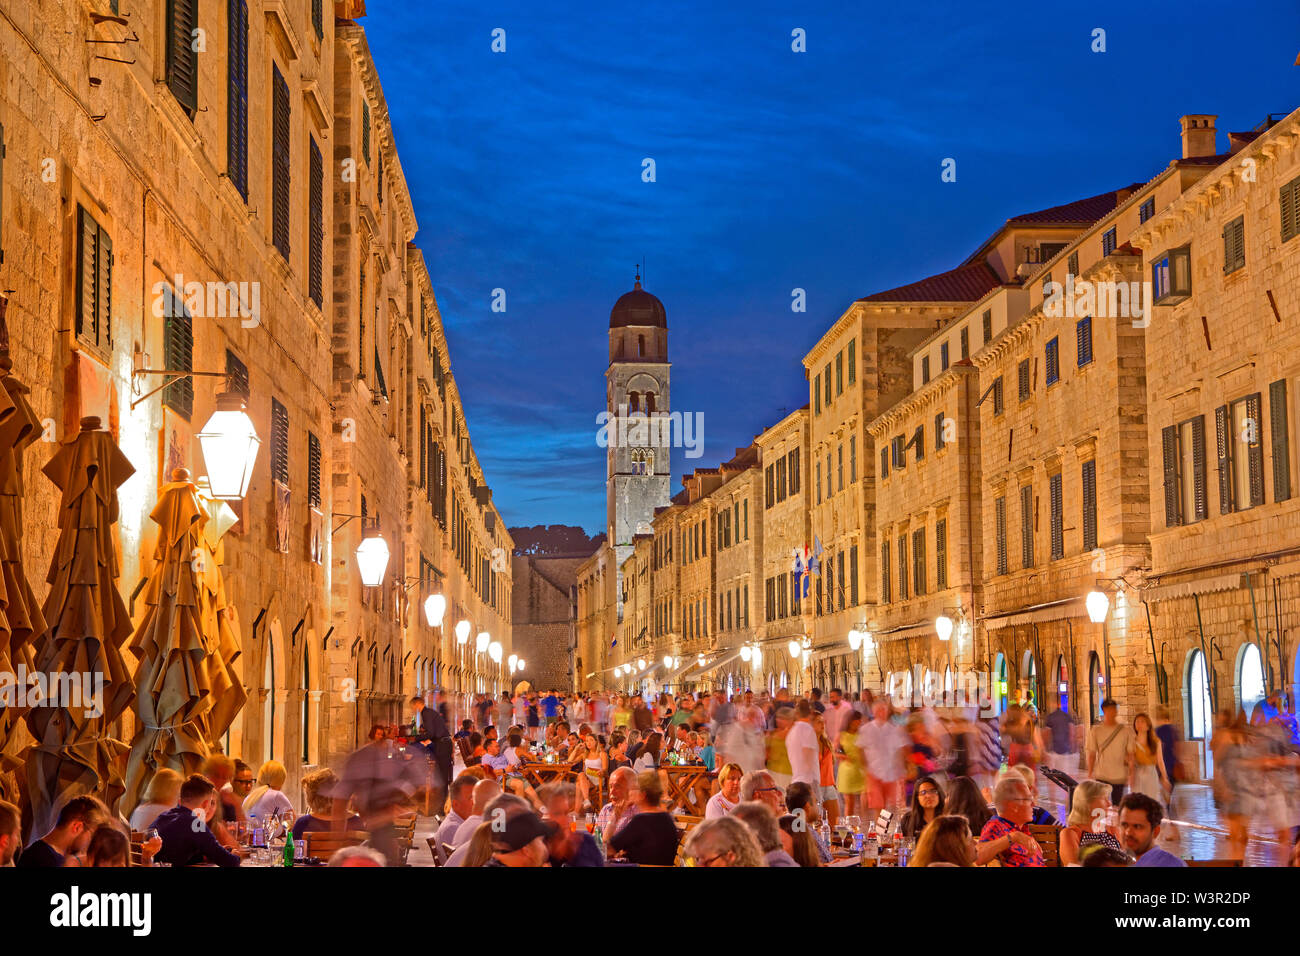 Am Abend in der Altstadt von Dubrovnik an der Dalmatinischen Küste Kroatiens. Stockfoto